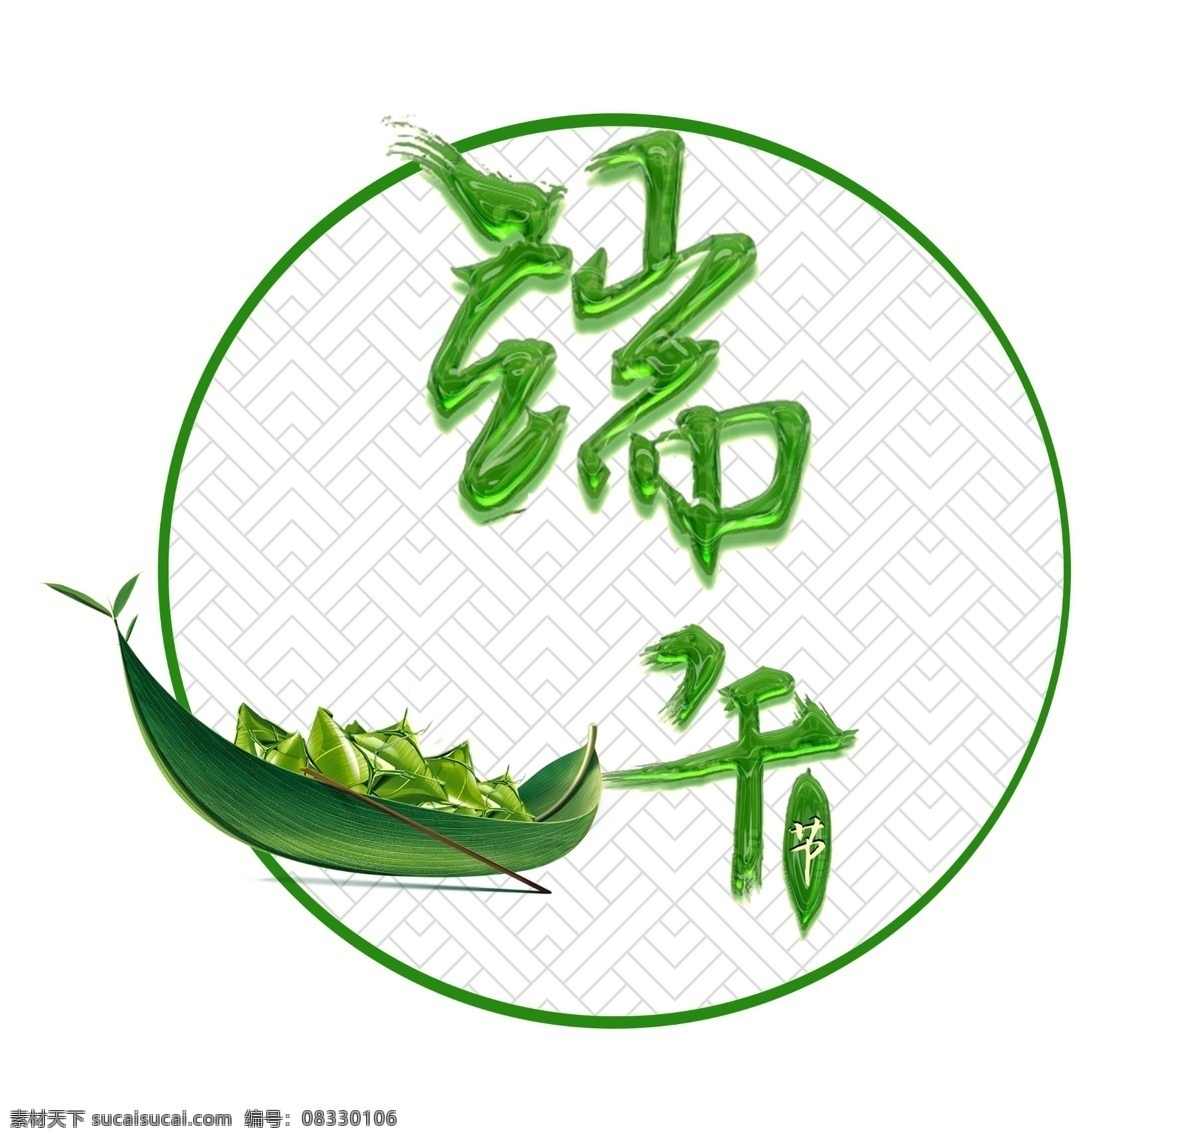 端午 绿 玻璃 效果 艺术 字 端午节 节假日 节日 龙舟 粽子 艺术字 端午艺术字 端午字体 端阳